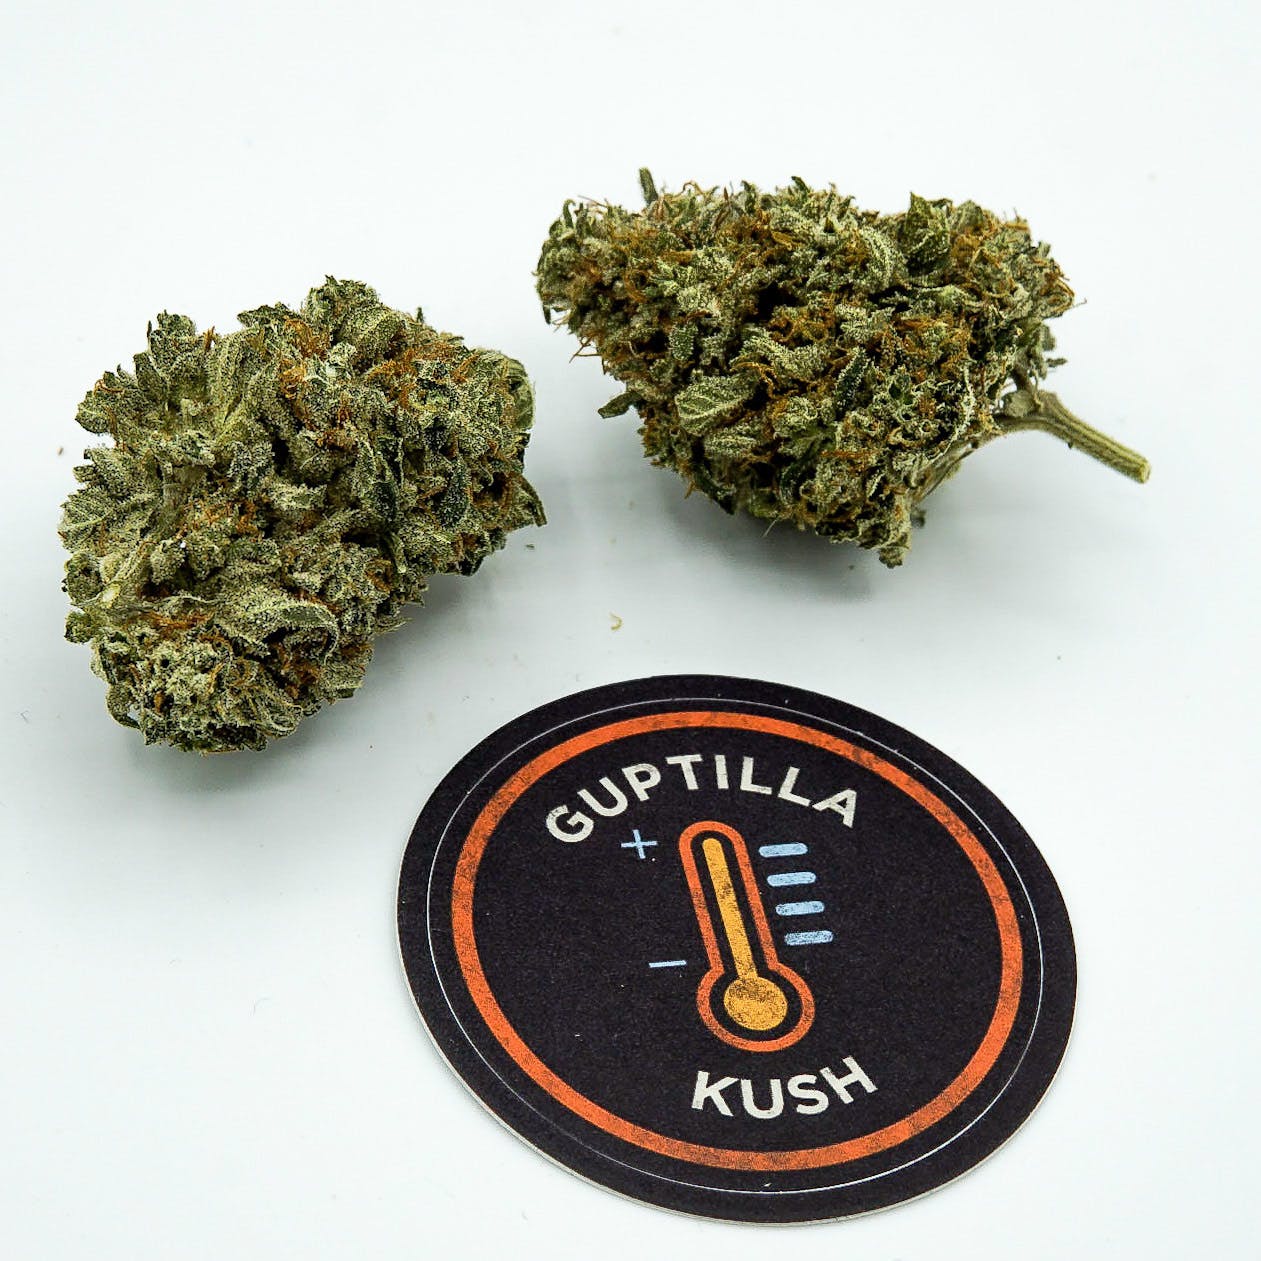 Guptilla by JAR Cannabis Co.